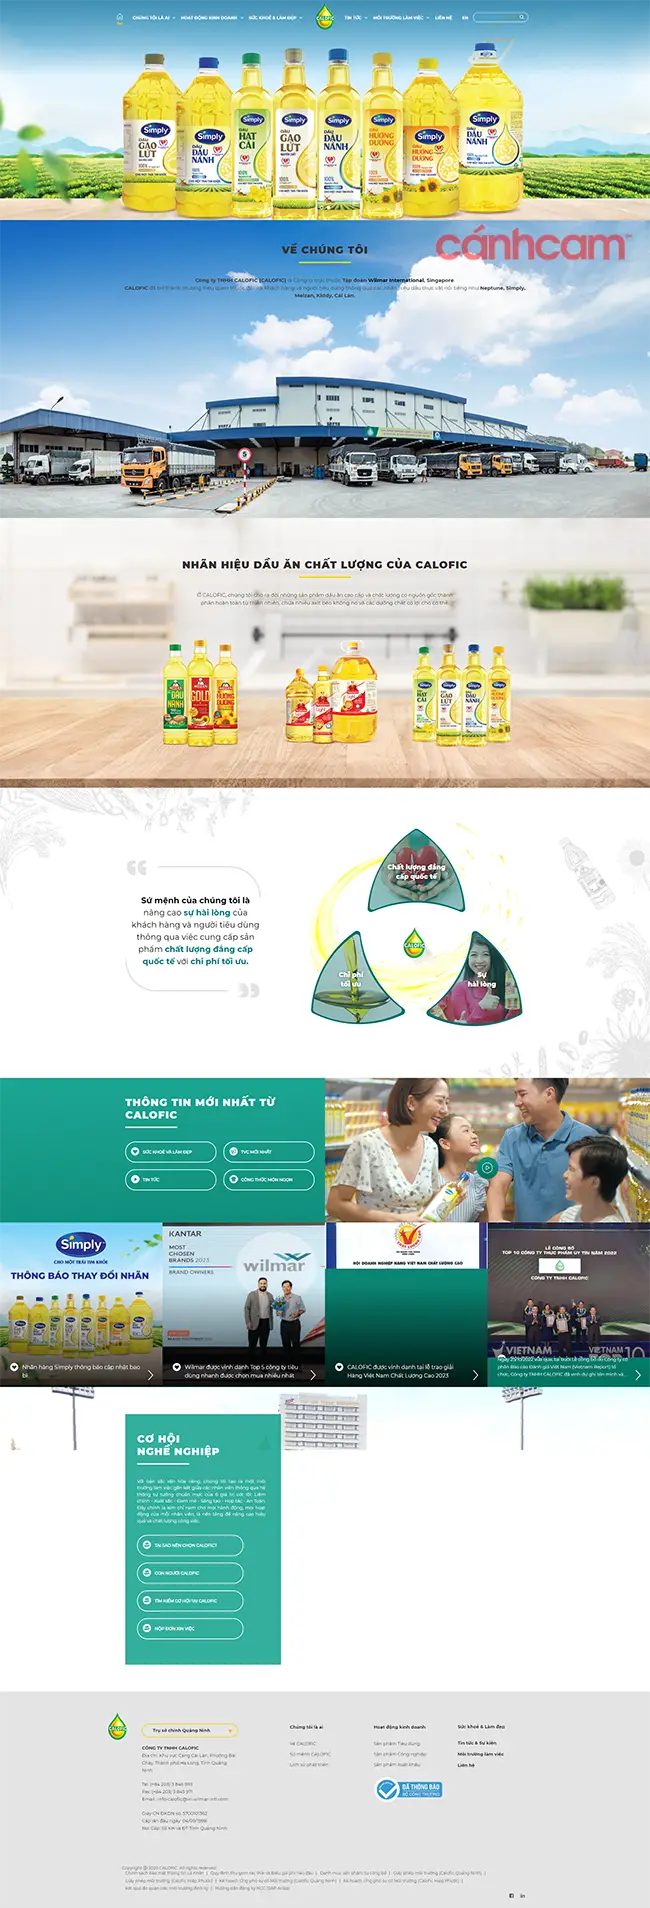 thiết kế website thực phẩm, thiết kế trang web bán thực phẩm, làm website thực phẩm